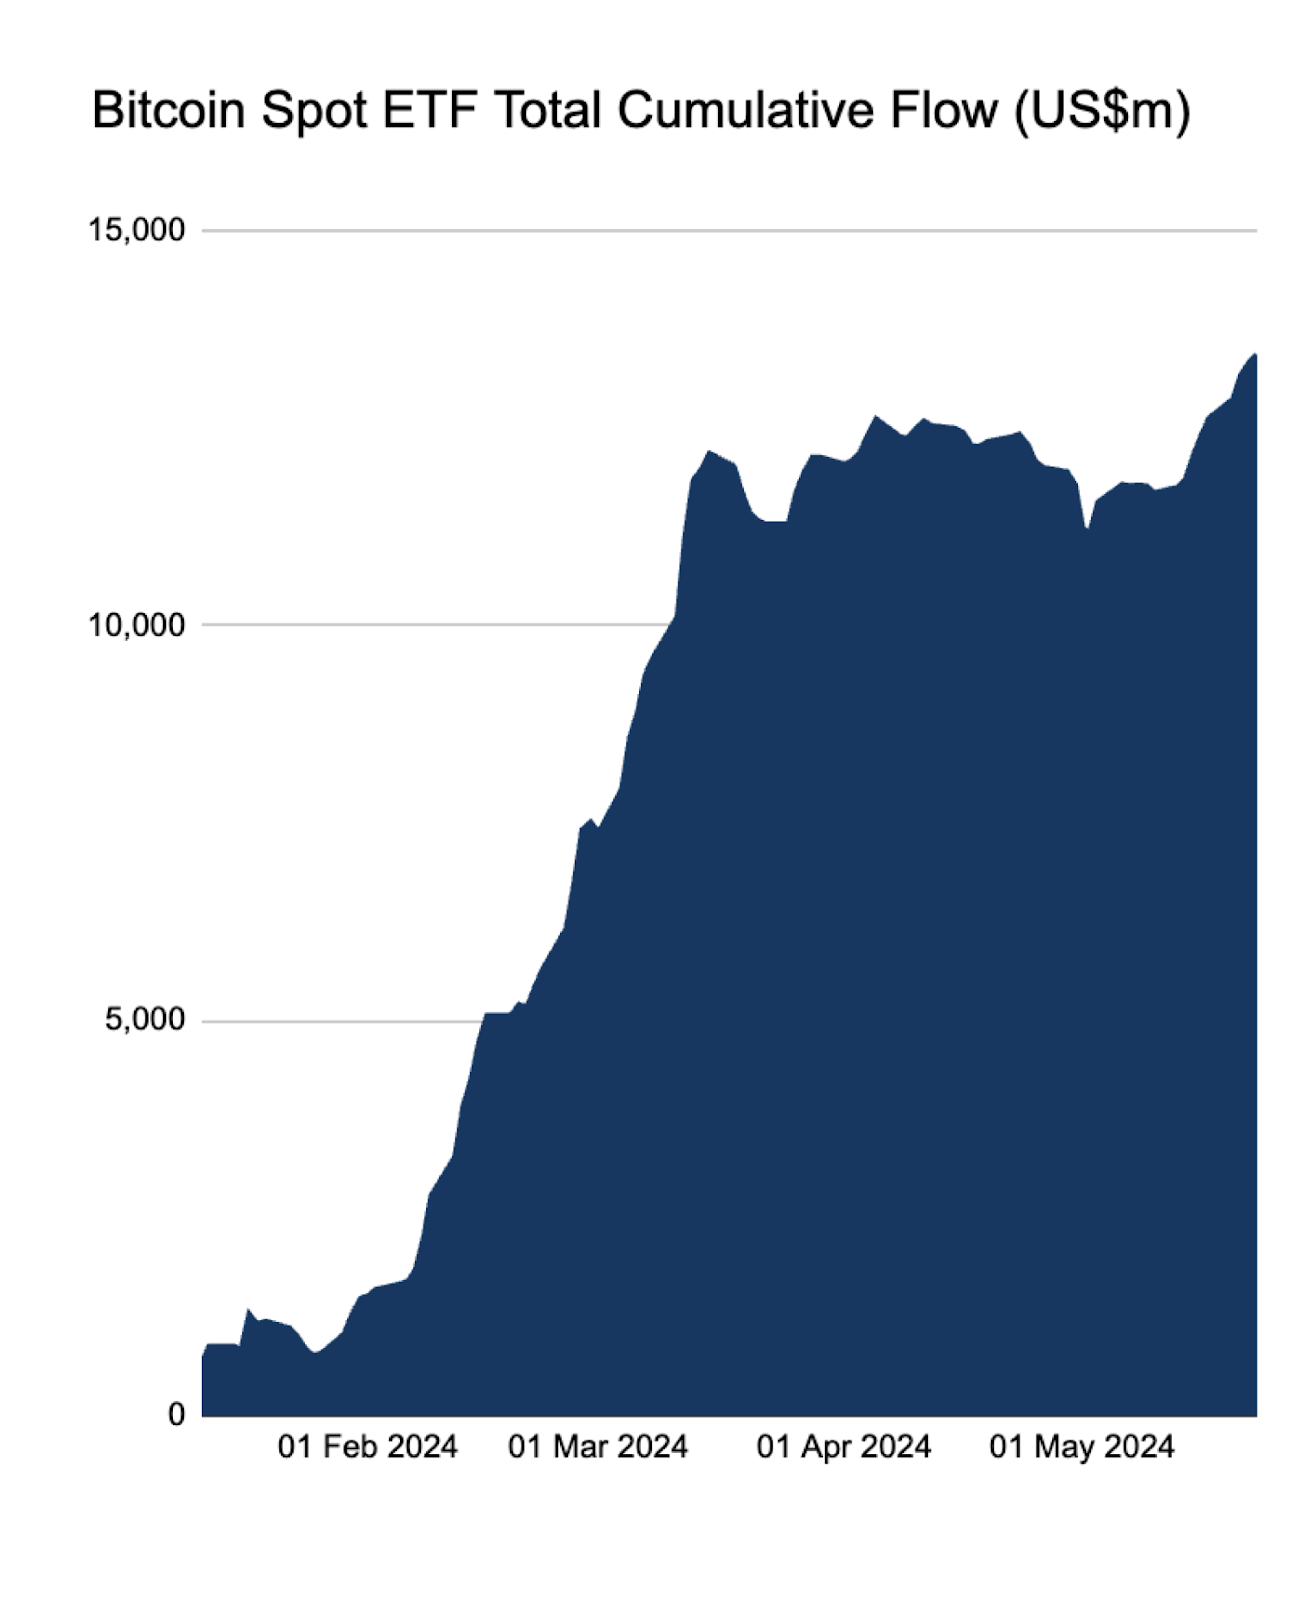 Bitcoin spot ETF total cumulative flow chart.